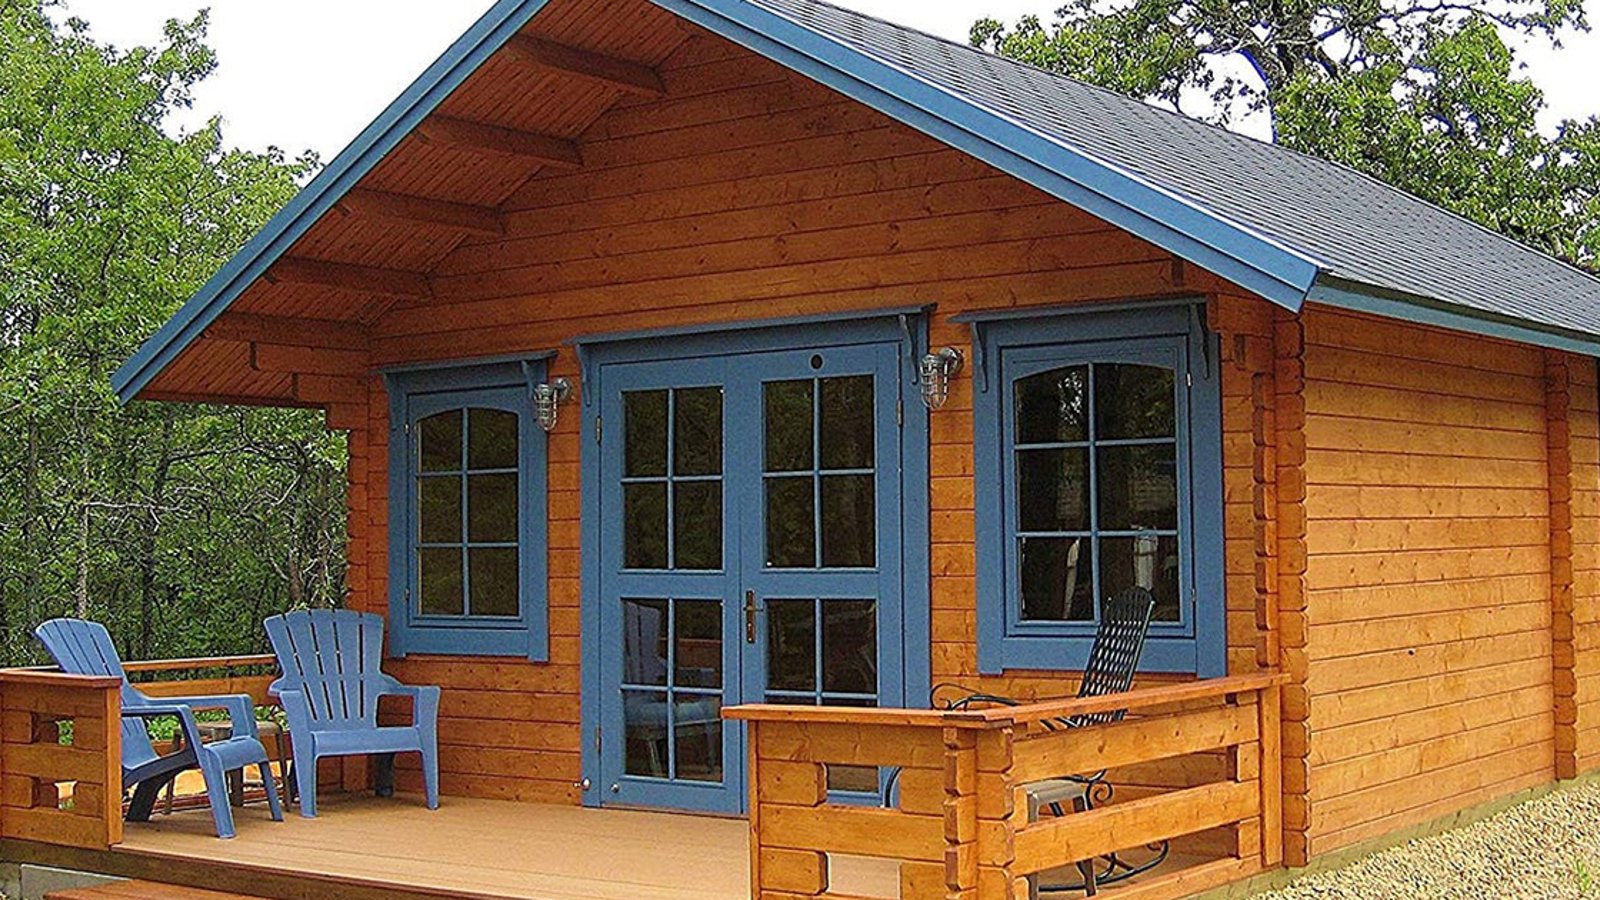 Amazon vend des petites maisons à moins de 20 000 $ que vous pouvez construire vous-mêmes en 2 jours